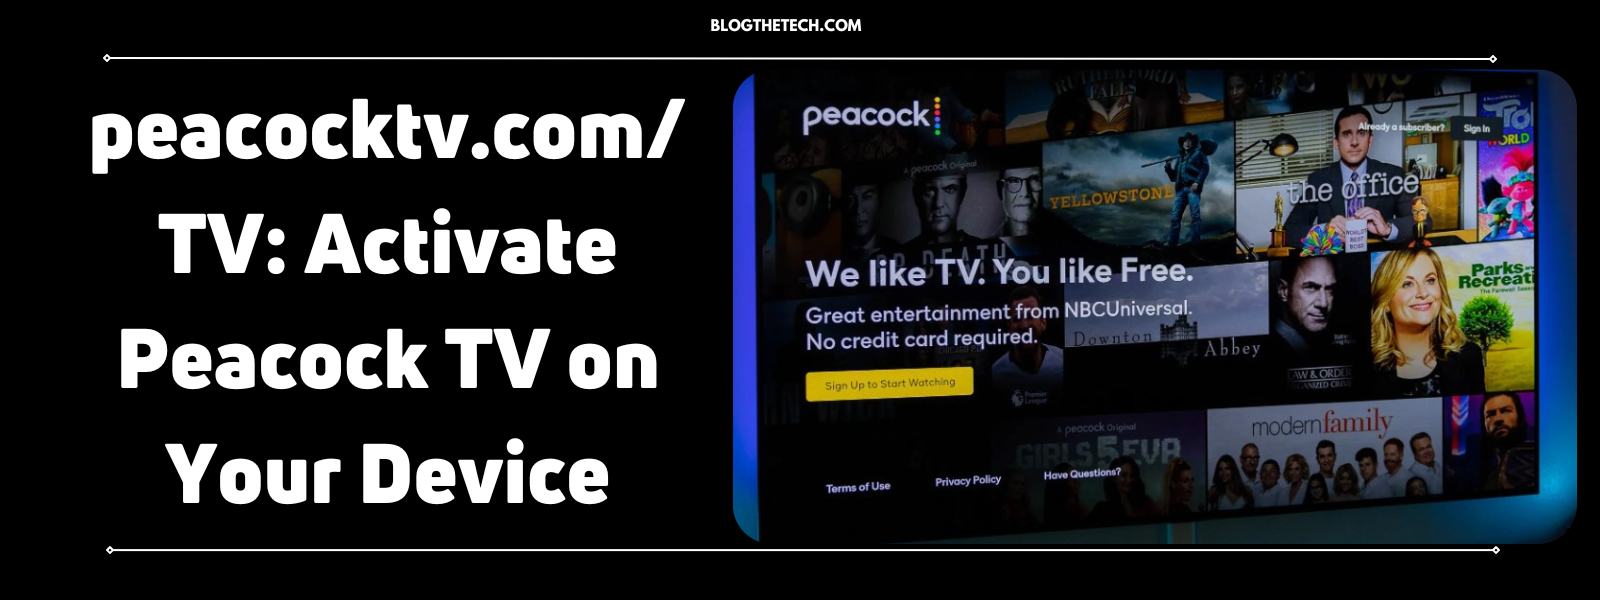 peacocktv-com-tv-activate-peacock-tv-featured